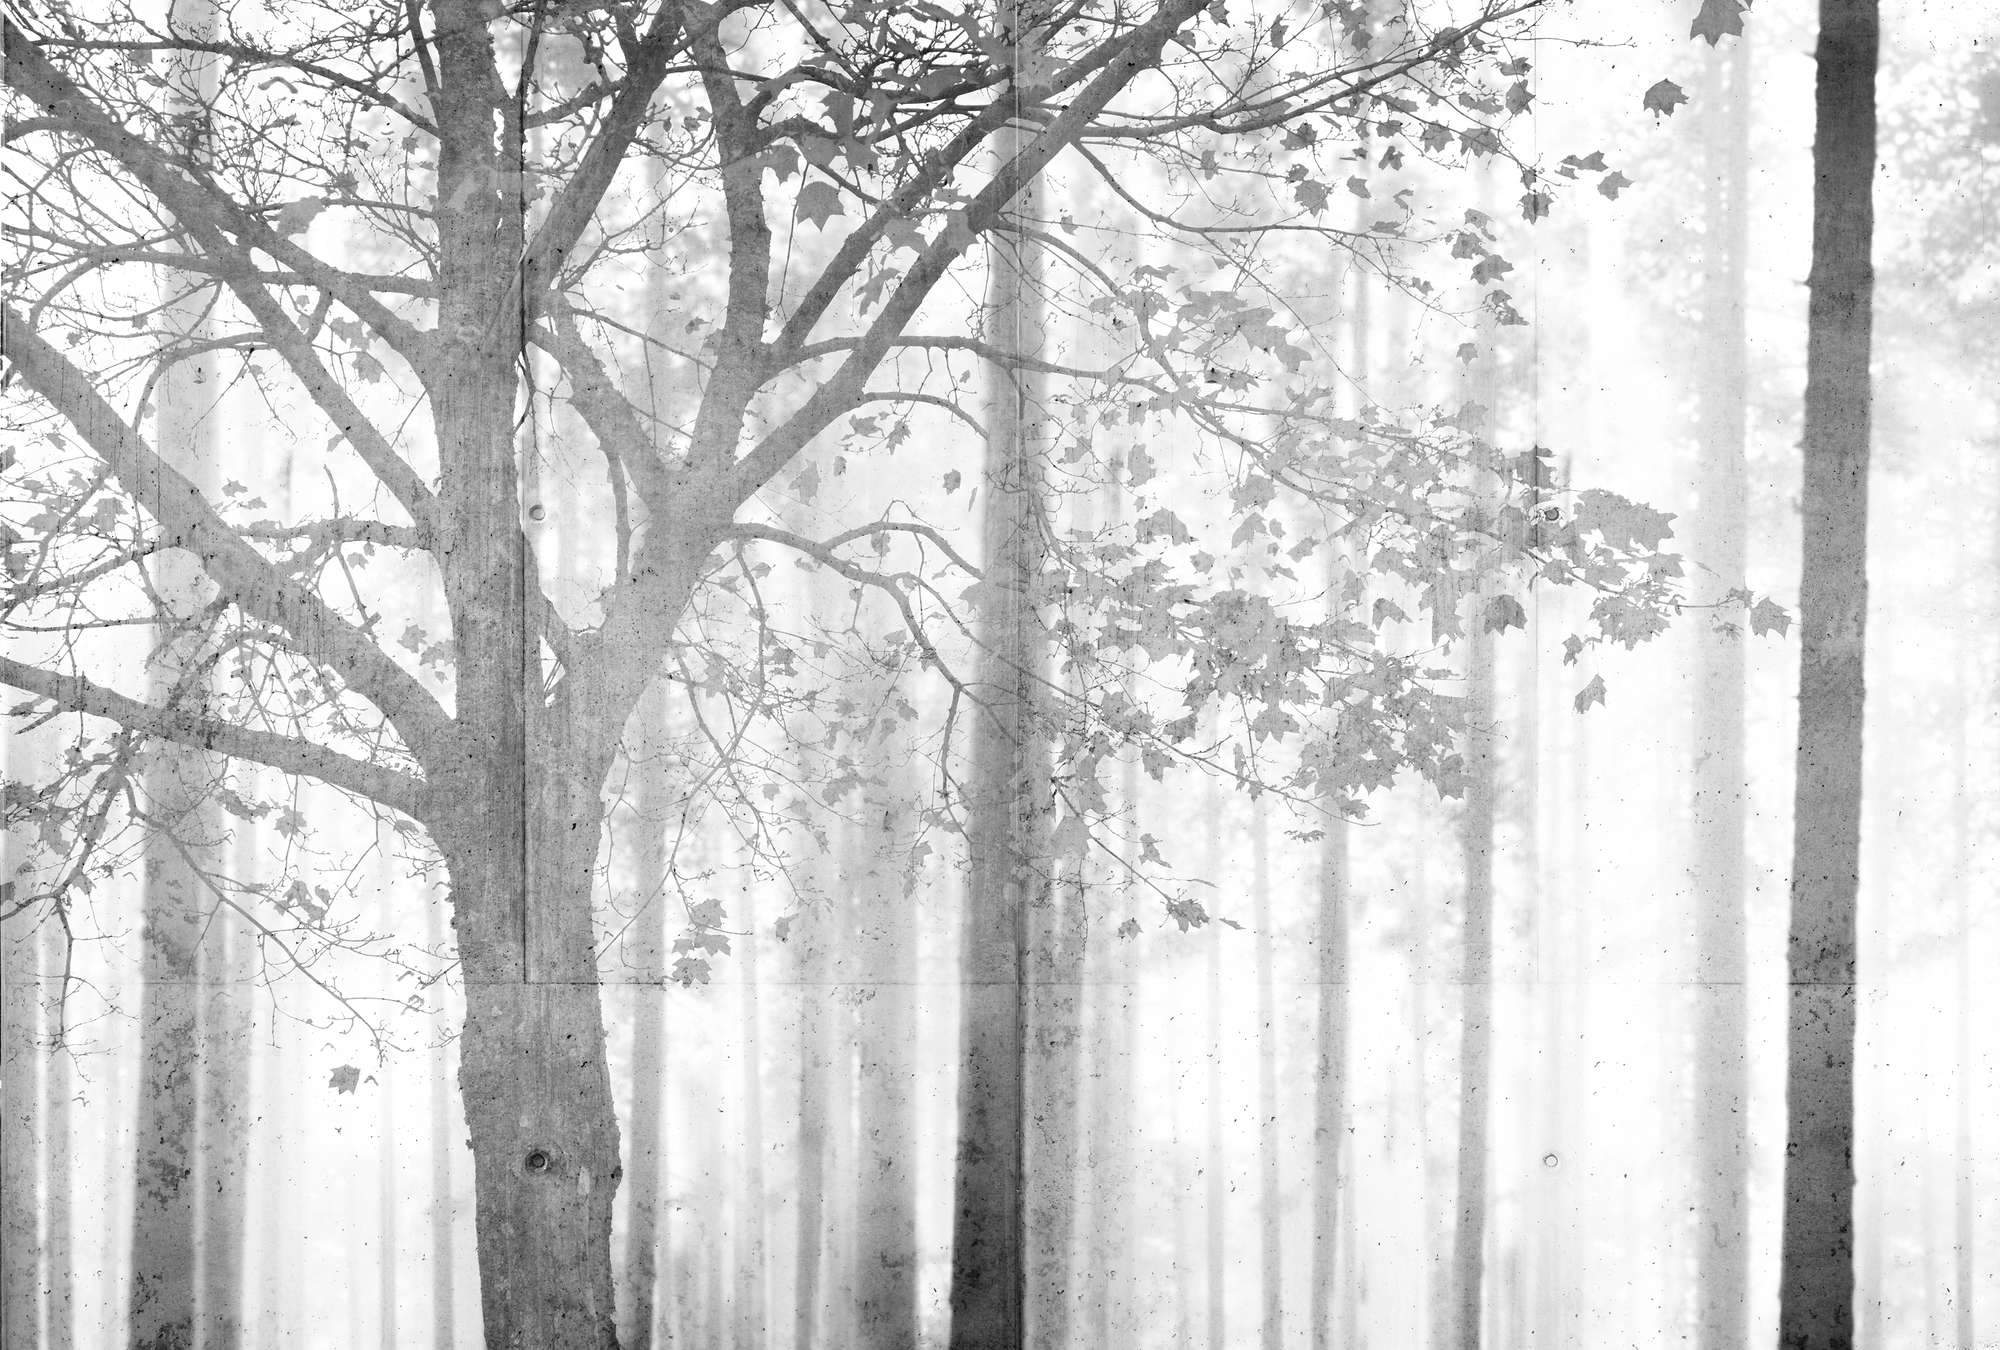             Papier peint forêt en noir et blanc avec nuances de gris - gris, blanc, noir
        